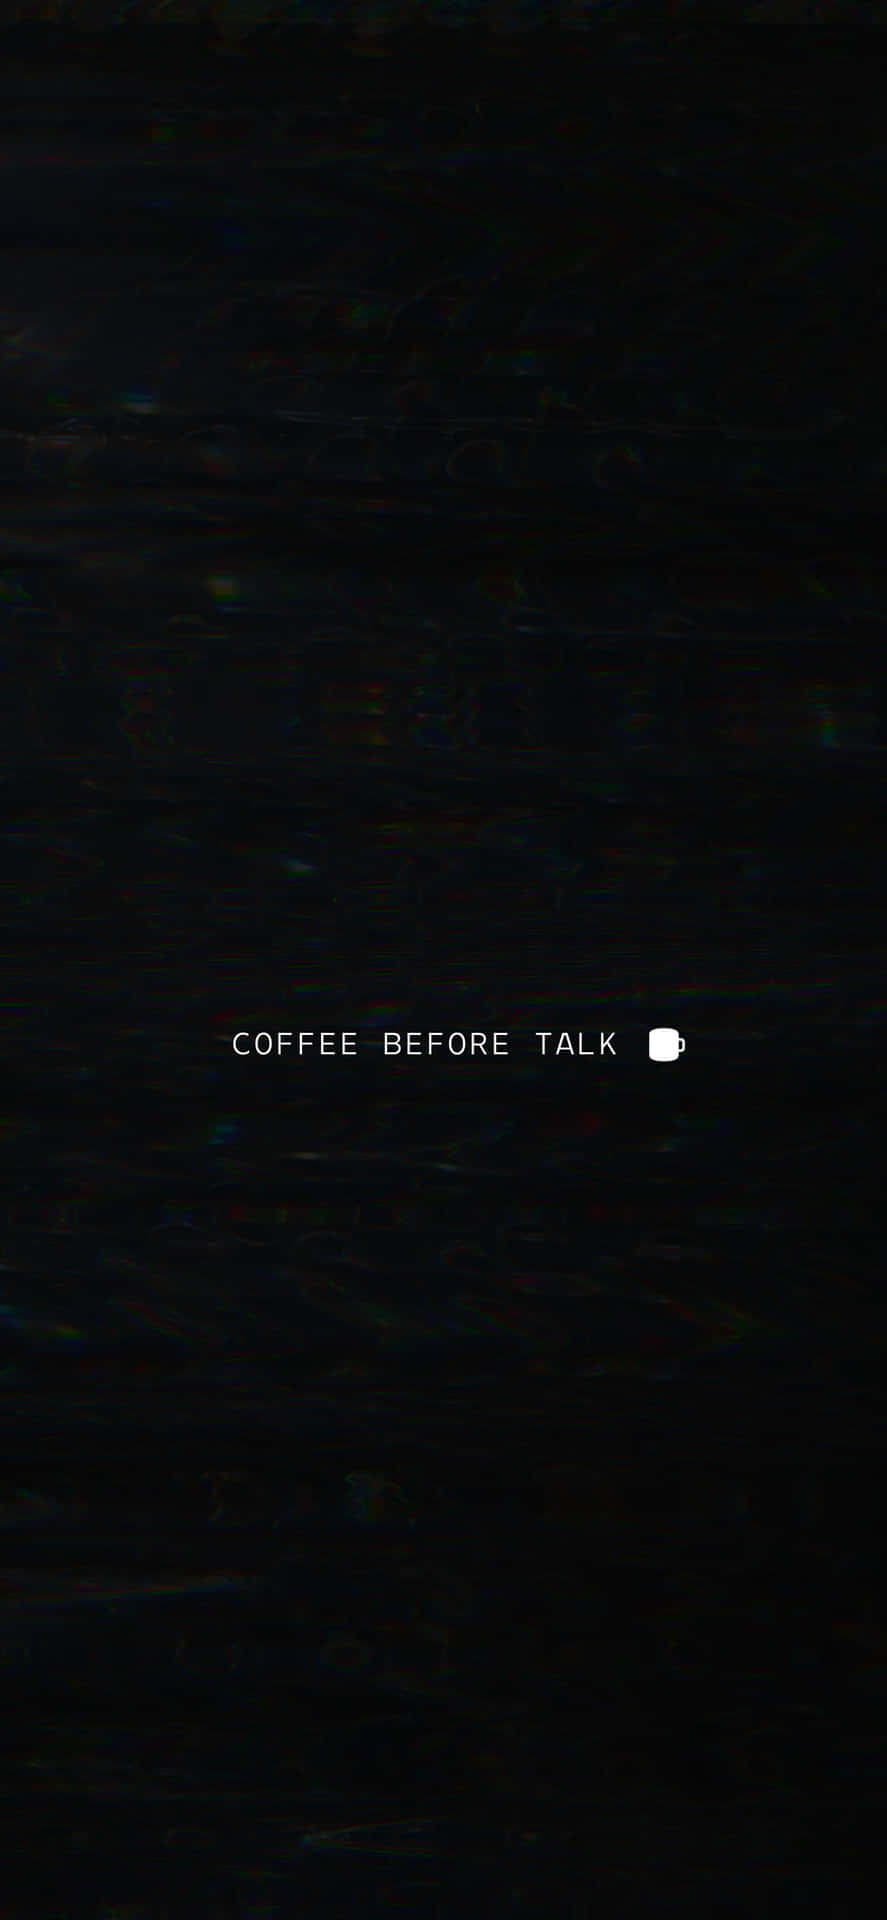 Kaffeevor Dem Gespräch - Ein Schwarzer Hintergrund Mit Weißem Text